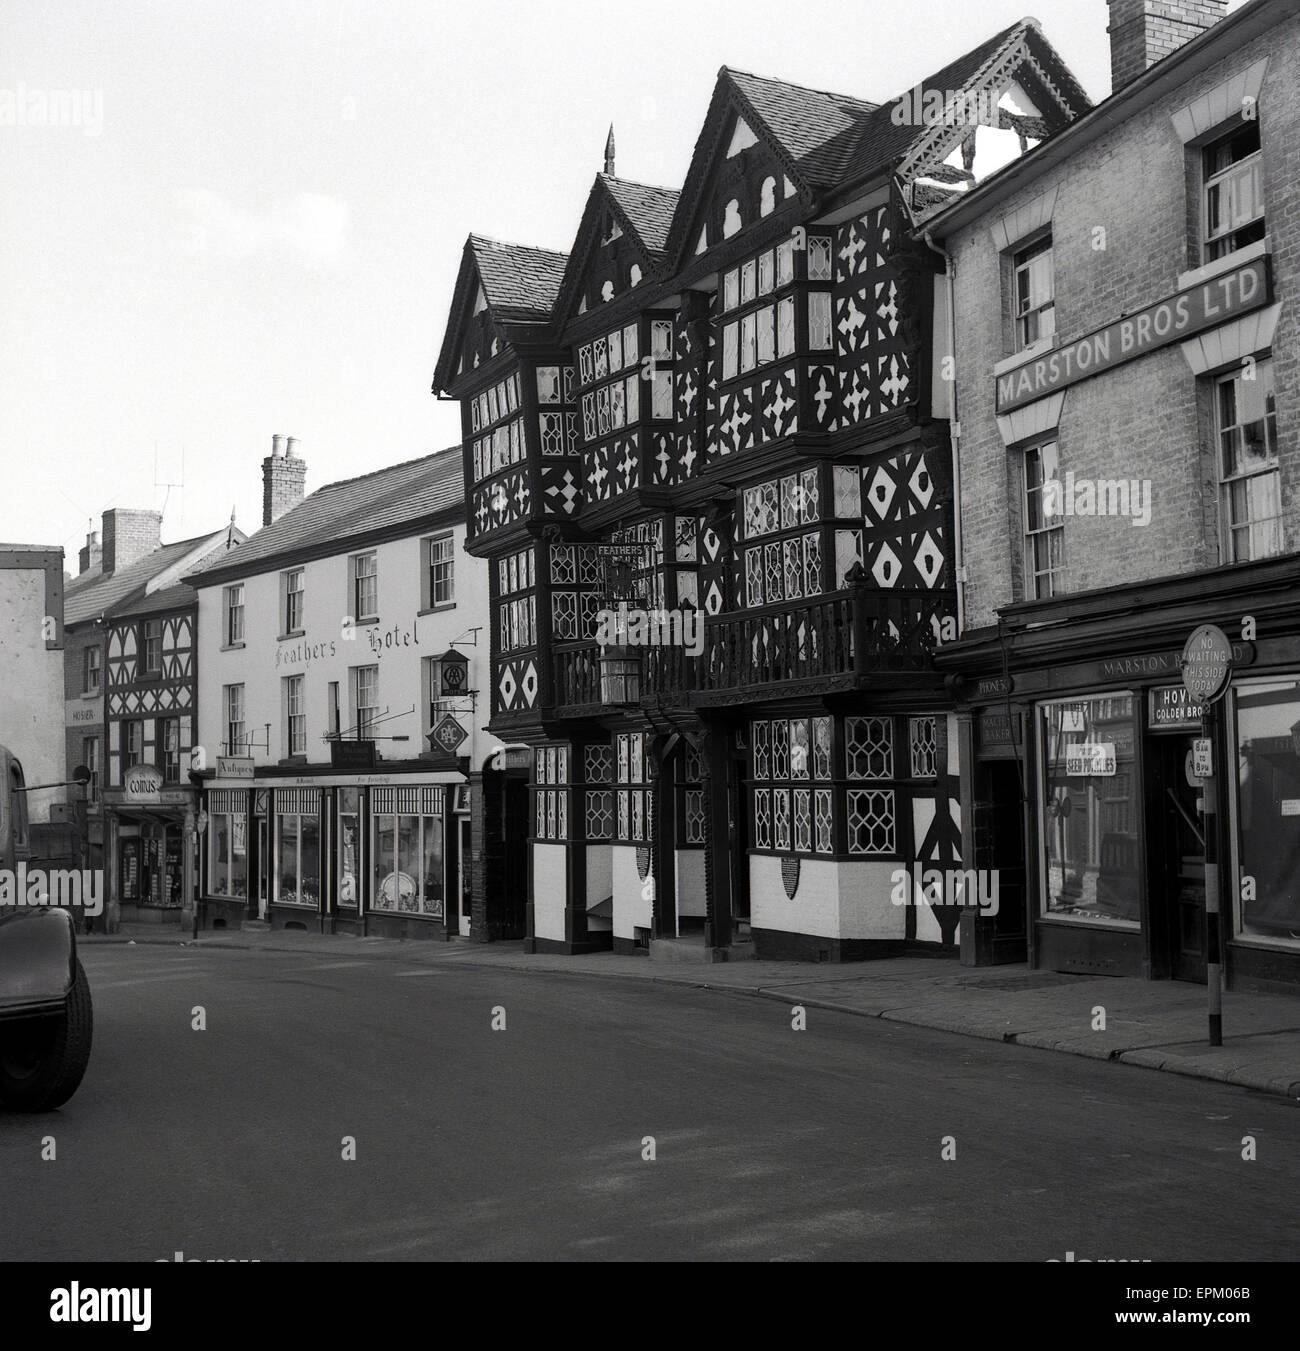 Années 1950, historique, vue extérieure de l'hôtel Feathers Ludlow, l'un des plus célèbres de l'hôtel de style tudor bâtiments à colombage, Ludlow, Shropshire, Angleterre. La ville compte près de 500 bâtiments classés. Banque D'Images